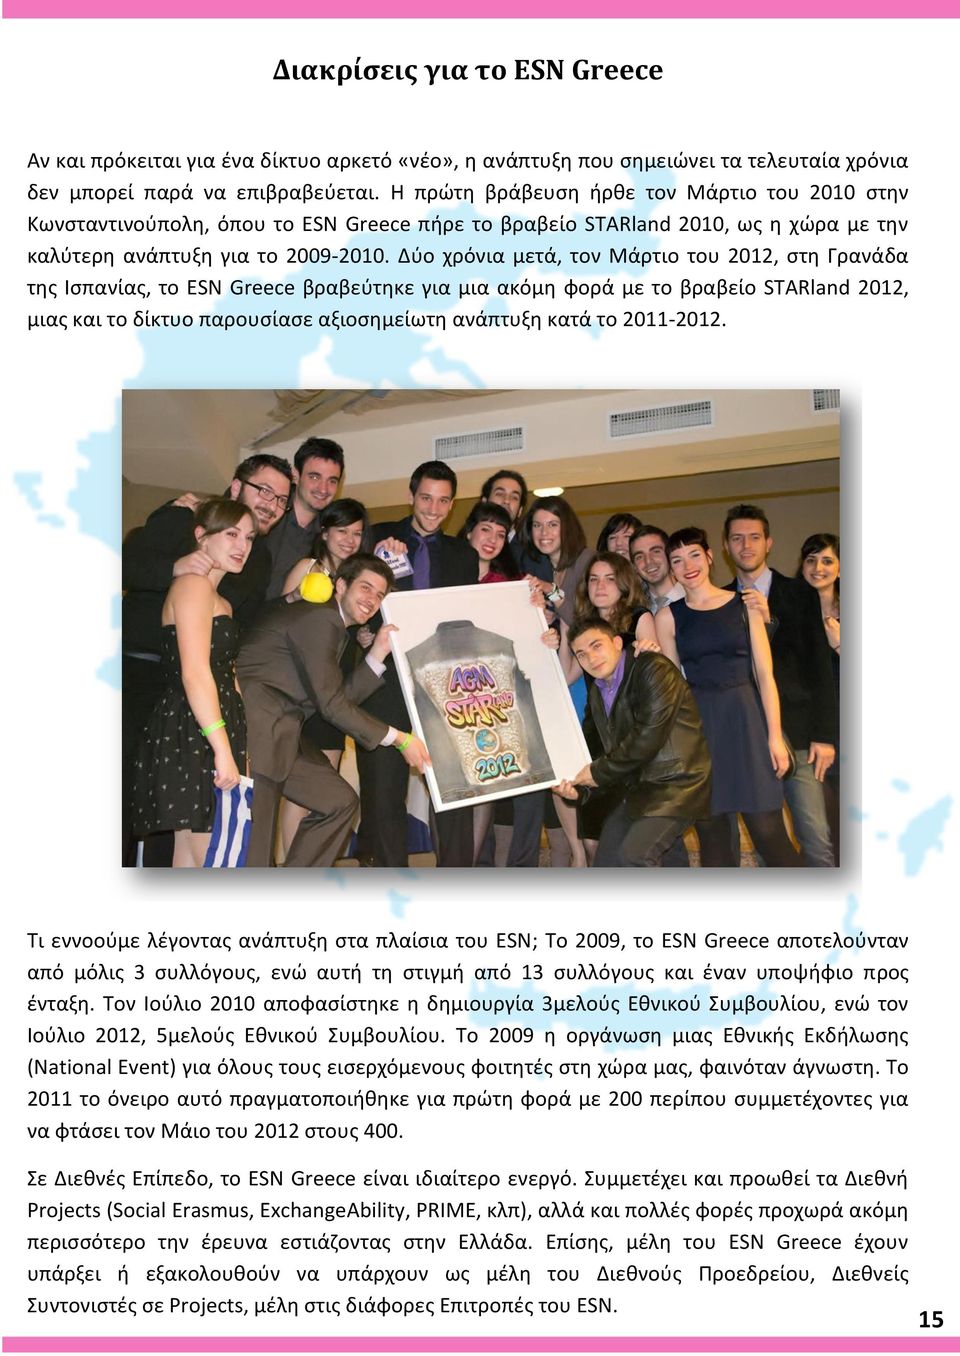 Δύο χρόνια μετά, τον Μάρτιο του 2012, στη Γρανάδα της Ισπανίας, το ESN Greece βραβεύτηκε για μια ακόμη φορά με το βραβείο STARland 2012, μιας και το δίκτυο παρουσίασε αξιοσημείωτη ανάπτυξη κατά το